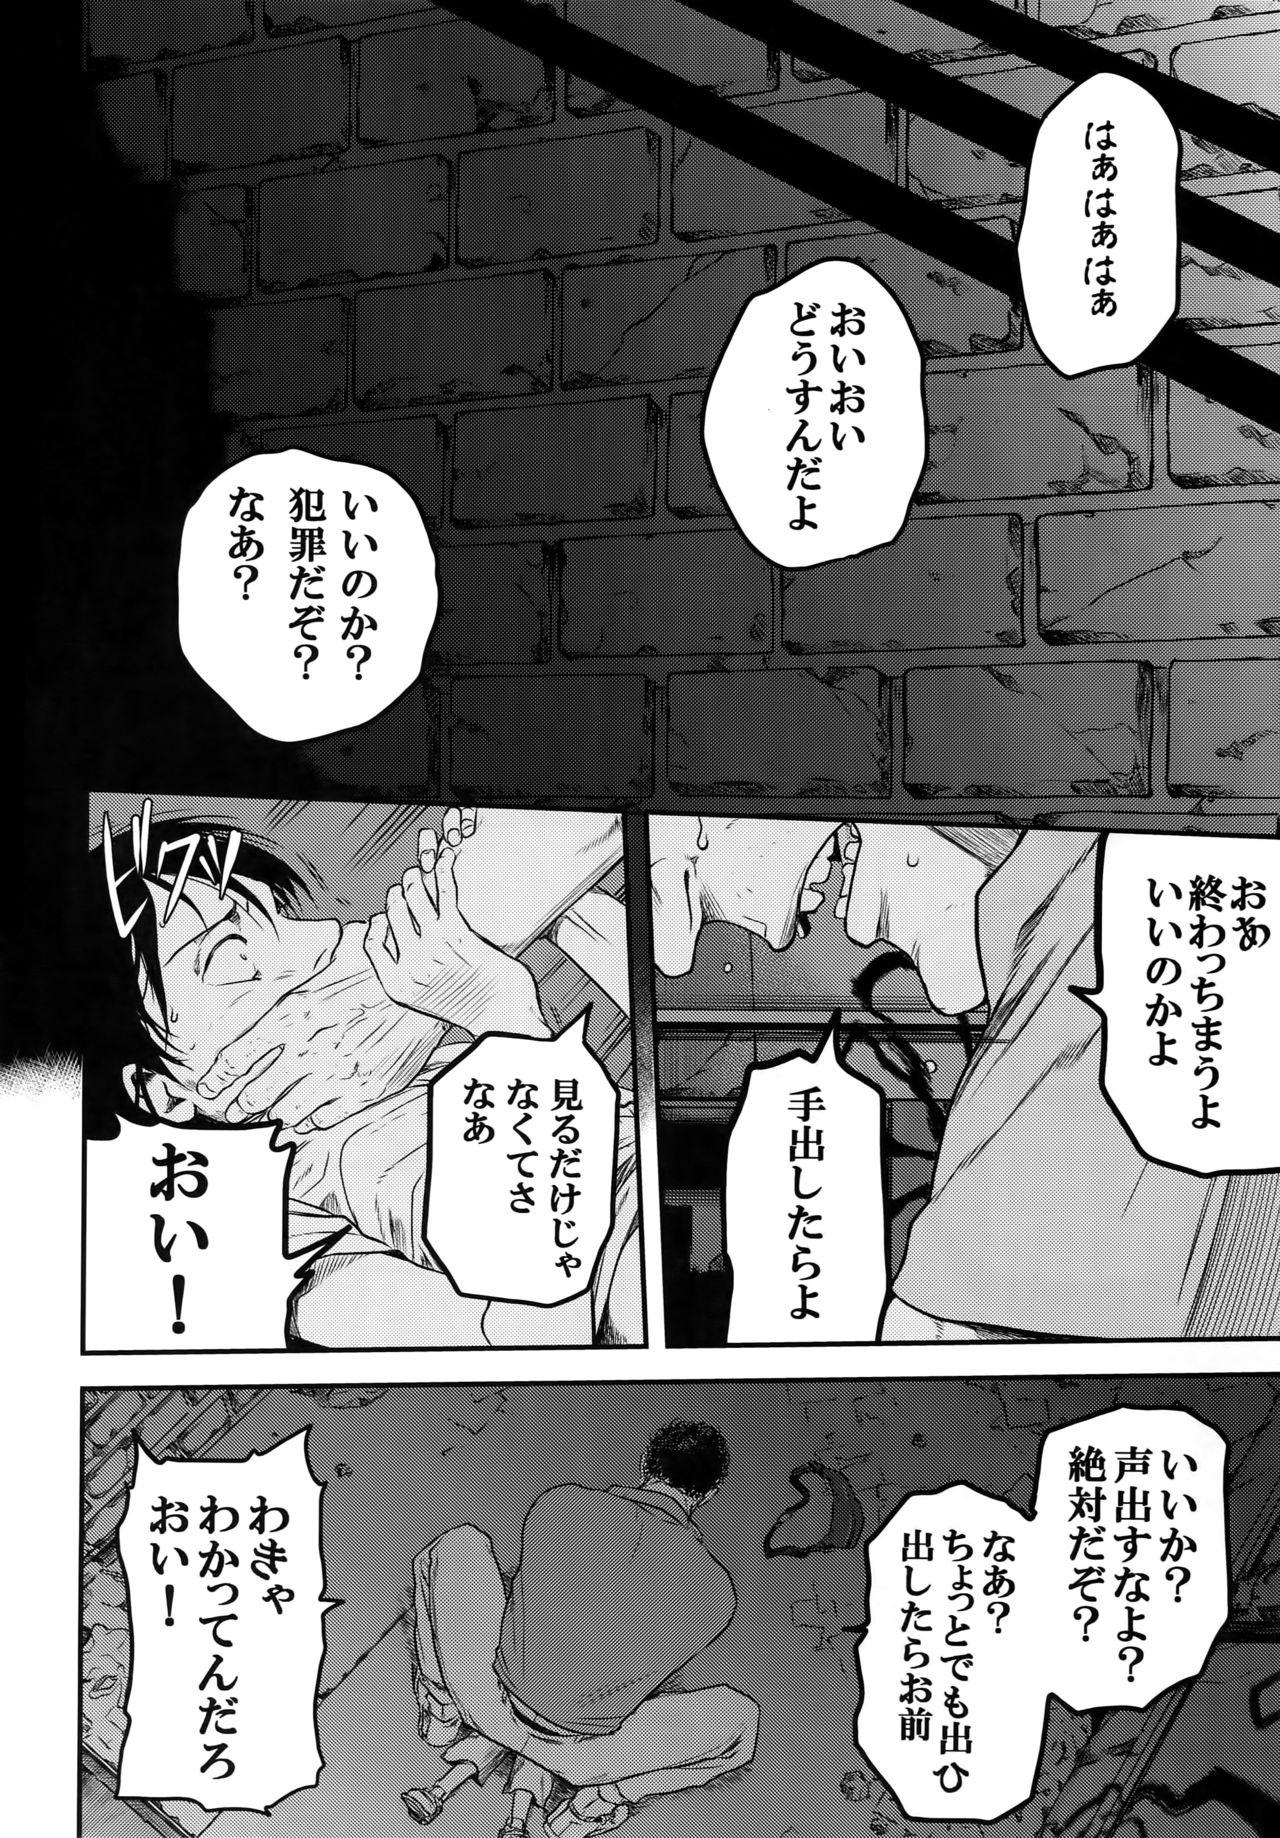 Culo Grande Nisemono Hero - Shingeki no kyojin Boss - Page 3